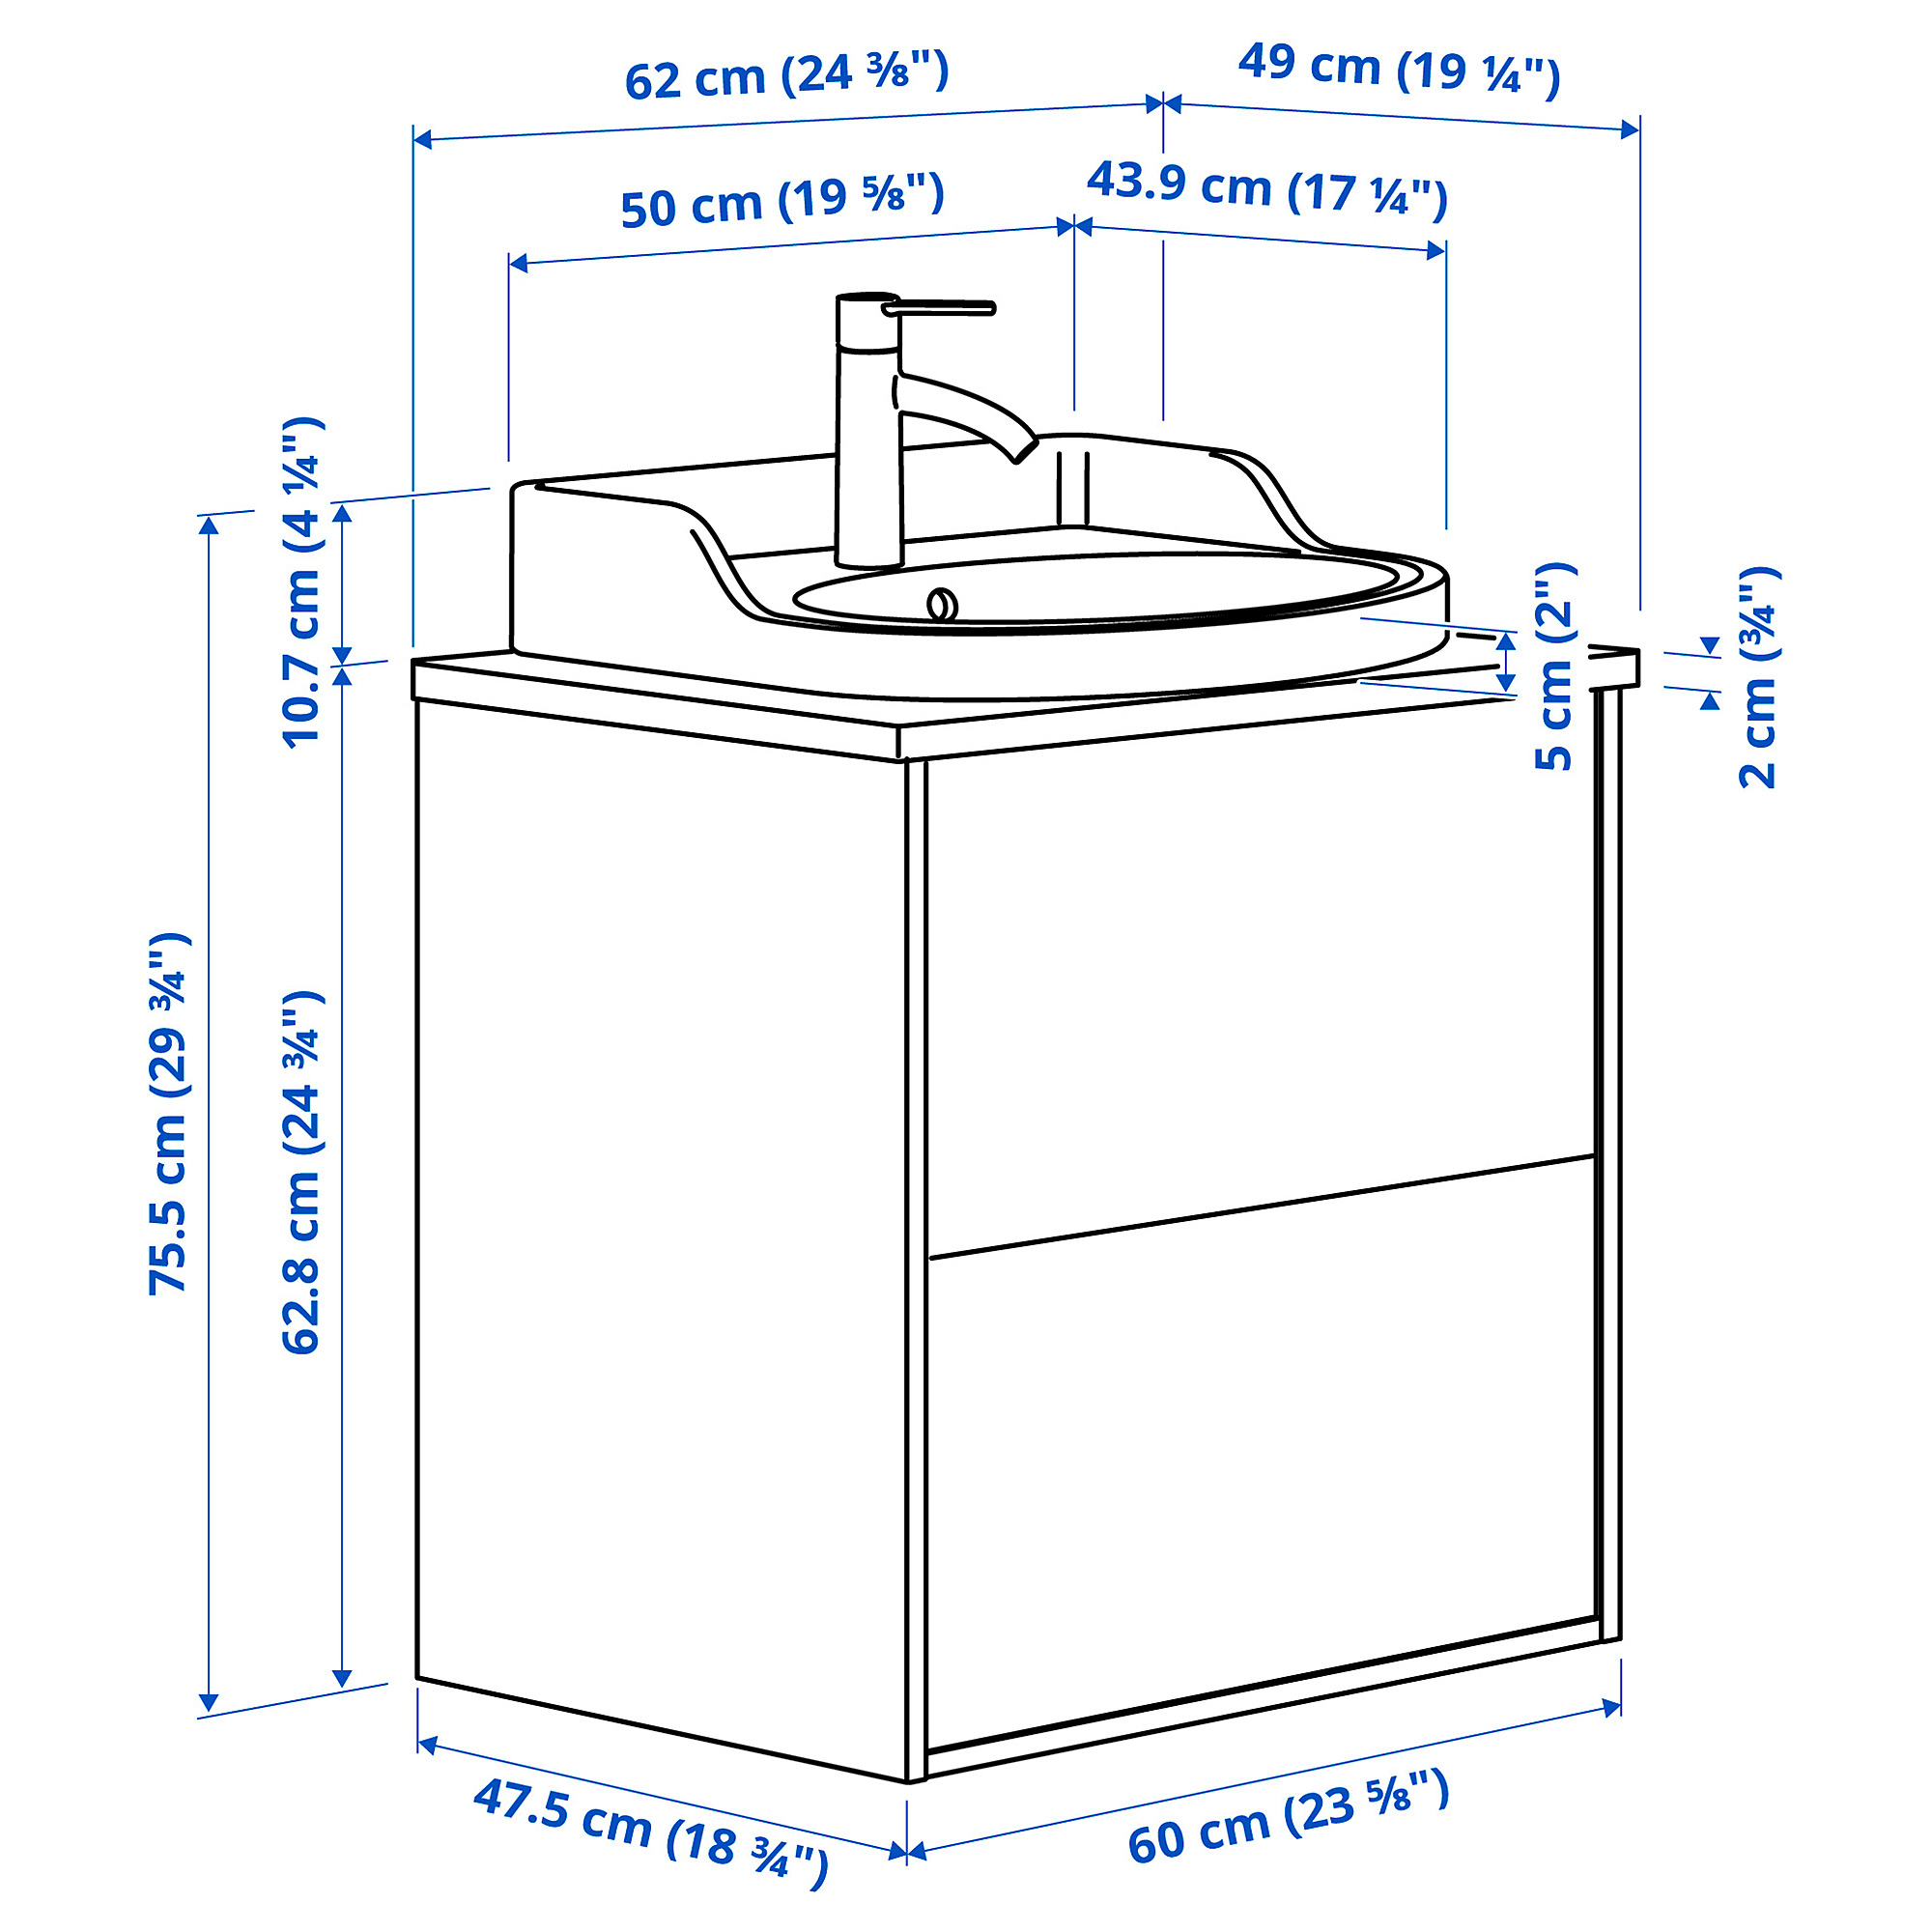 TÄNNFORSEN/RUTSJÖN wash-stnd w drawers/wash-basin/tap